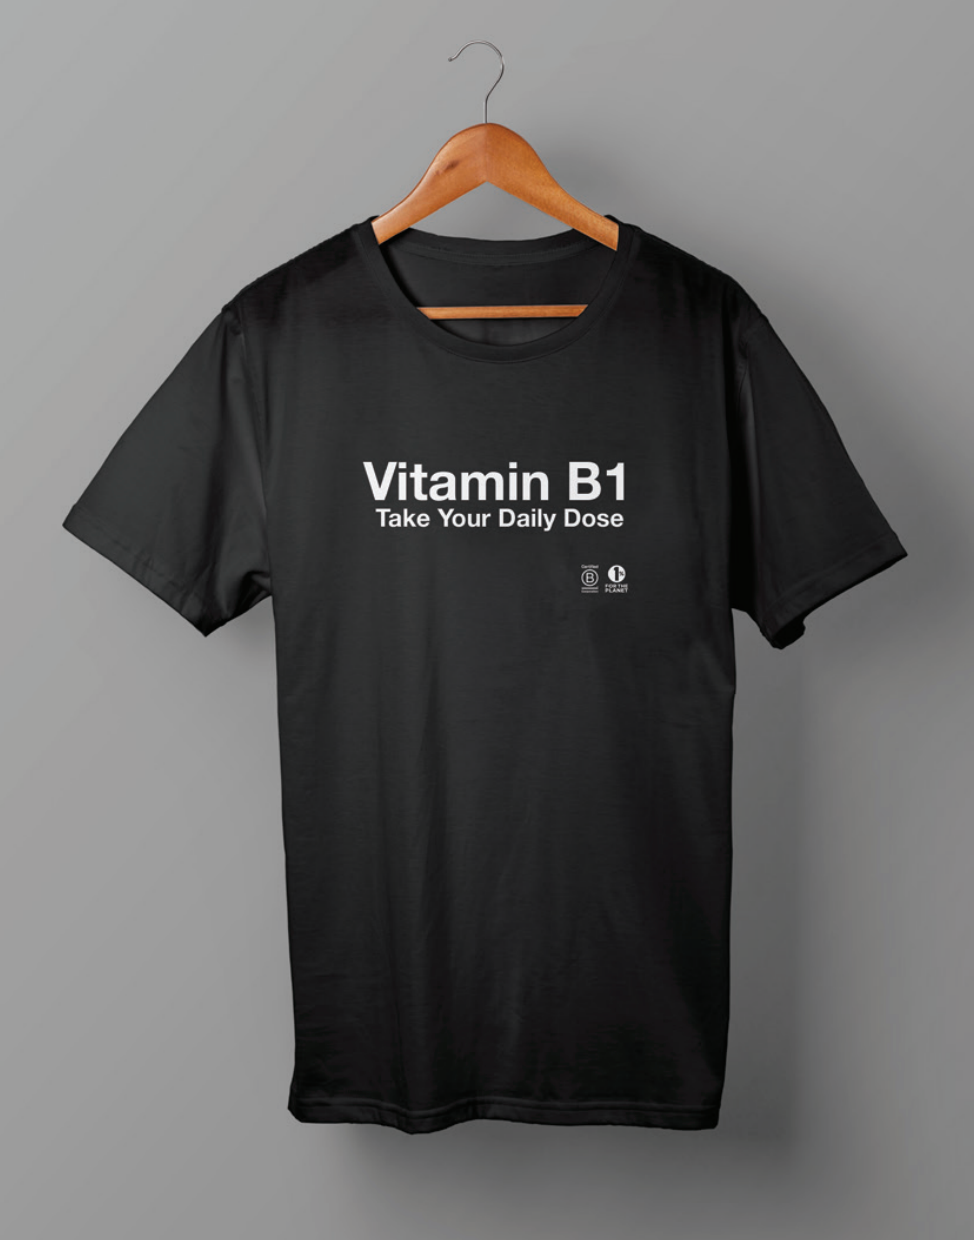 Women's "Vitamin B1" Tee